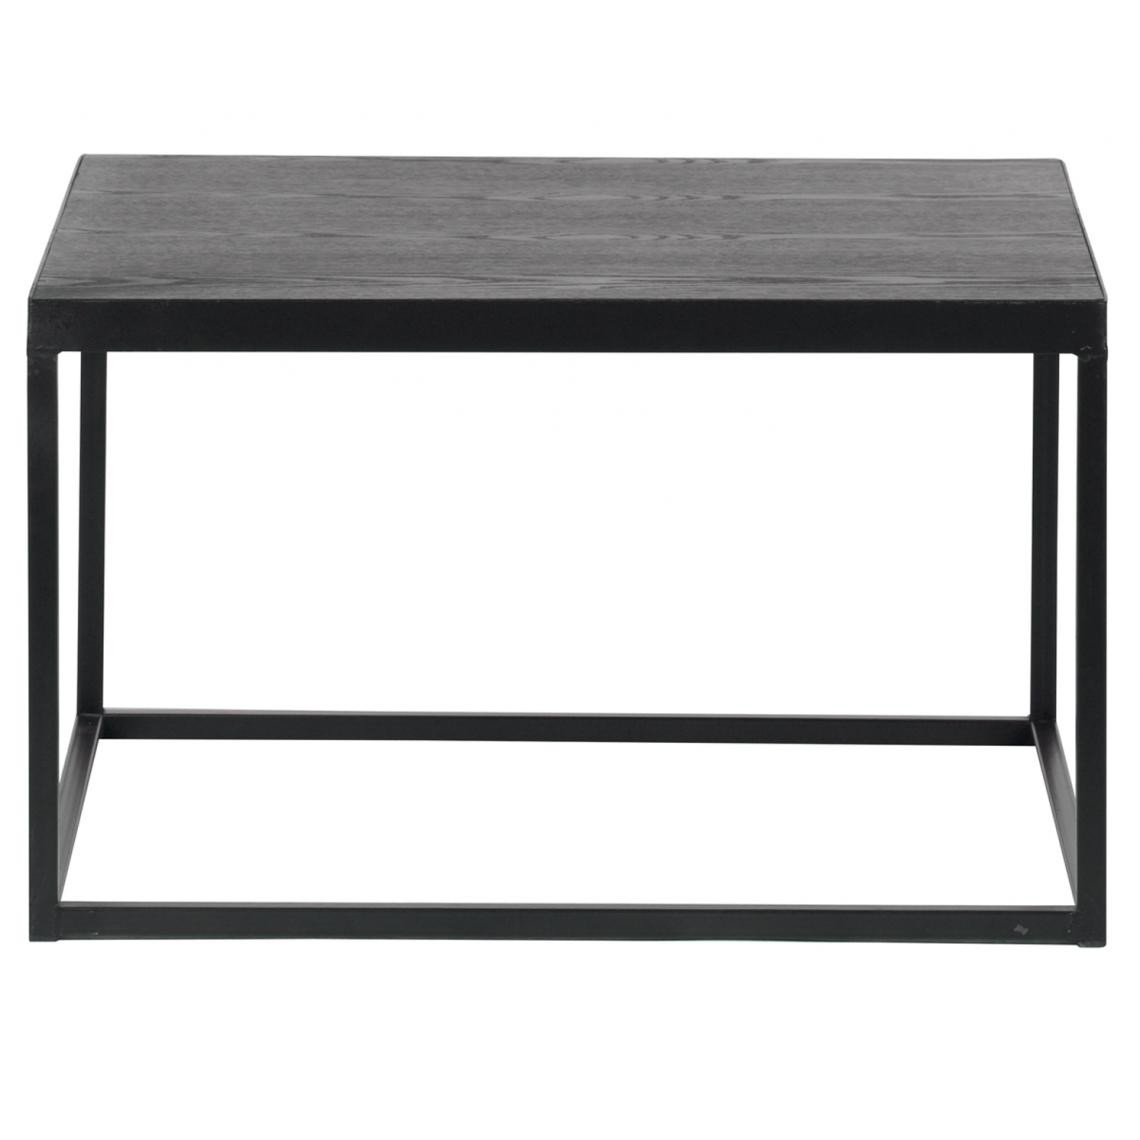 Pegane - Table basse en bois coloris noir - Dim : H38 x L60 x P60 cm - Tables basses